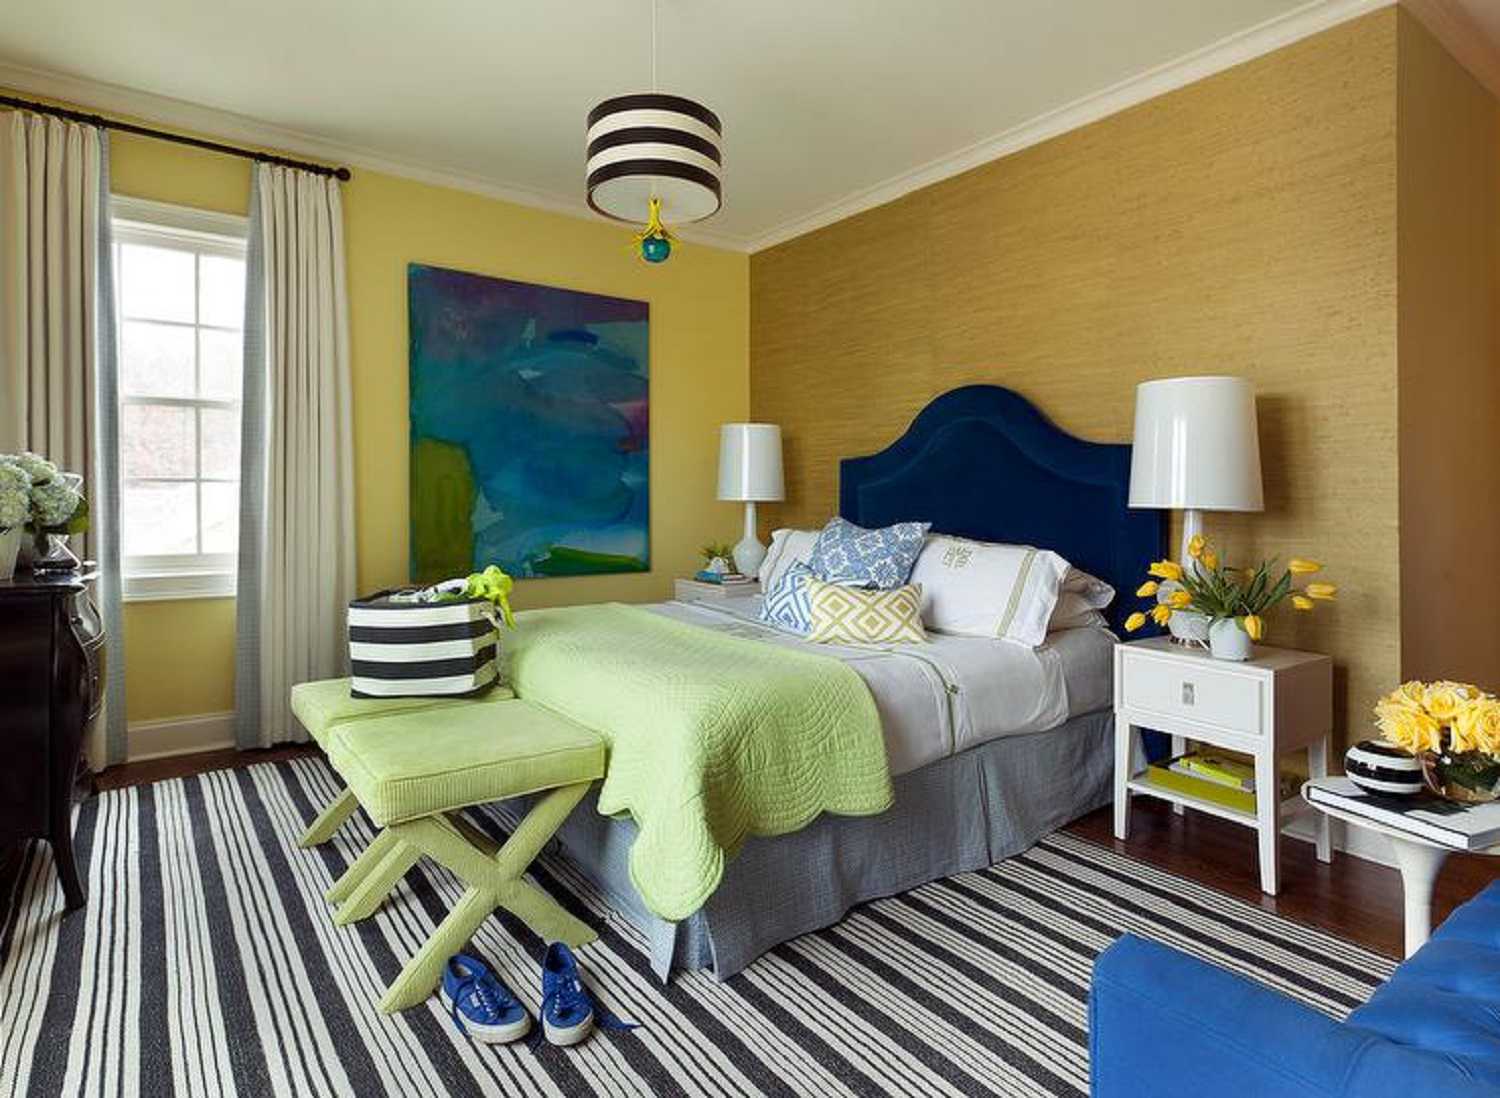 غرفة نوم ذهبية وزرقاء مع سجادة مخططة.